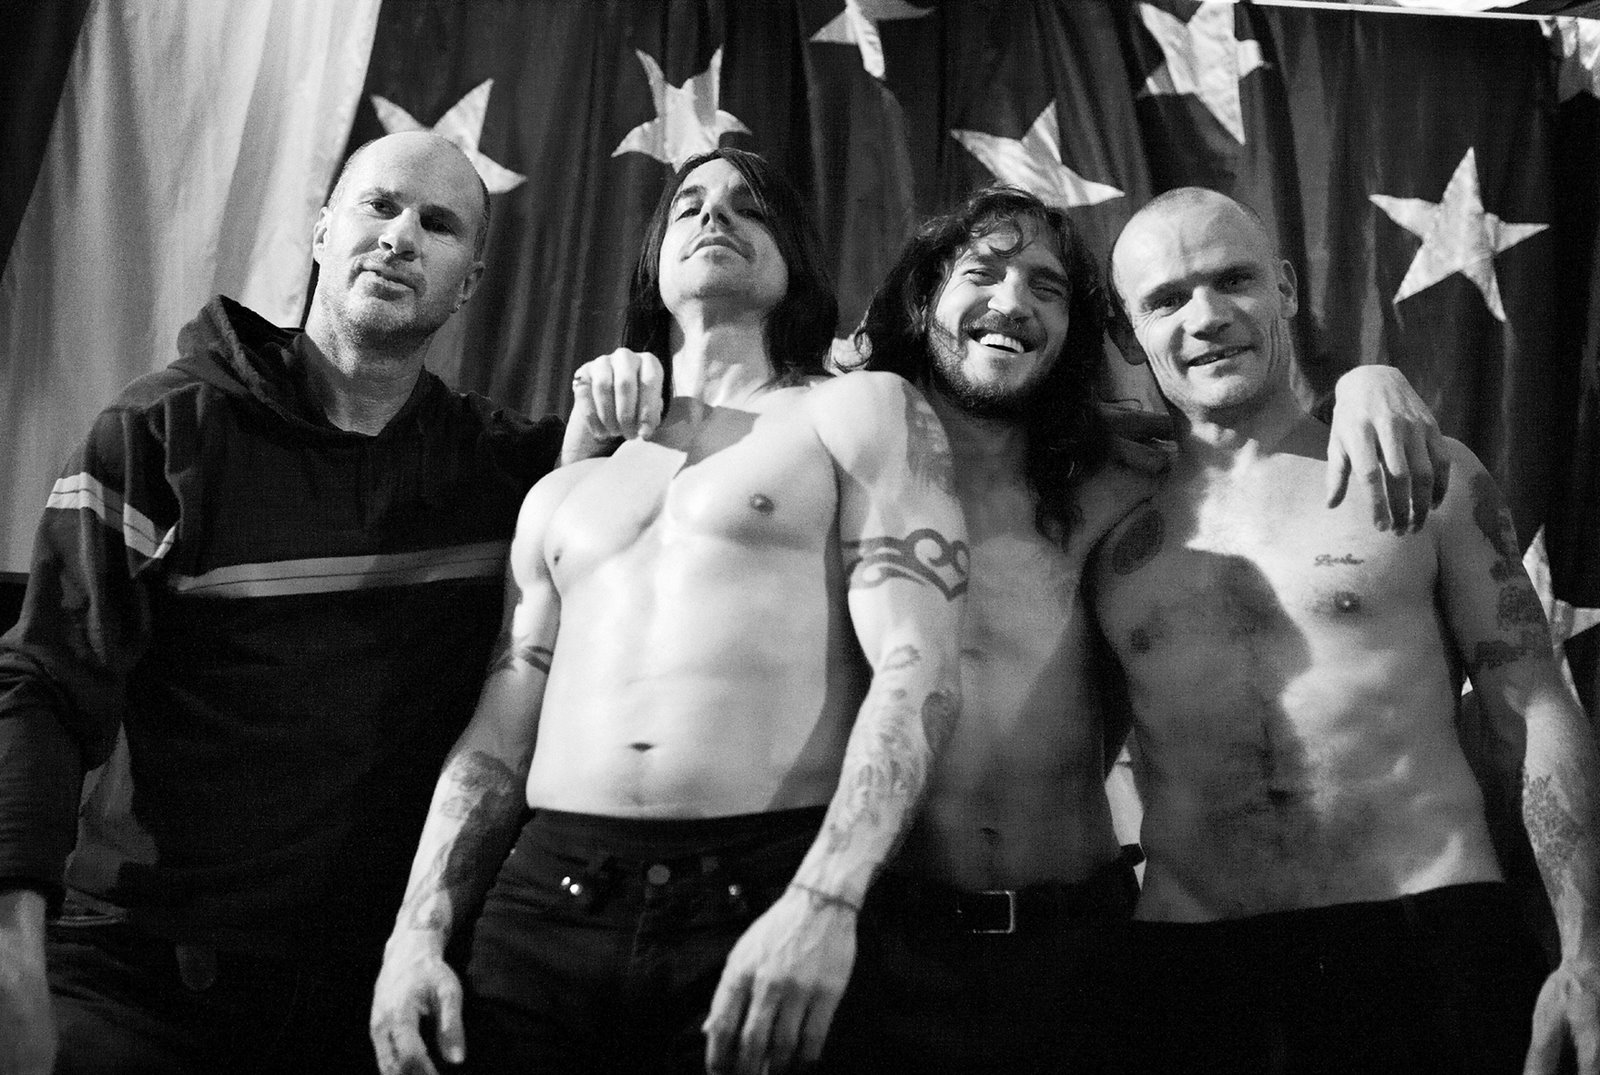 Red Hot Chili Peppers zagrają w Polsce